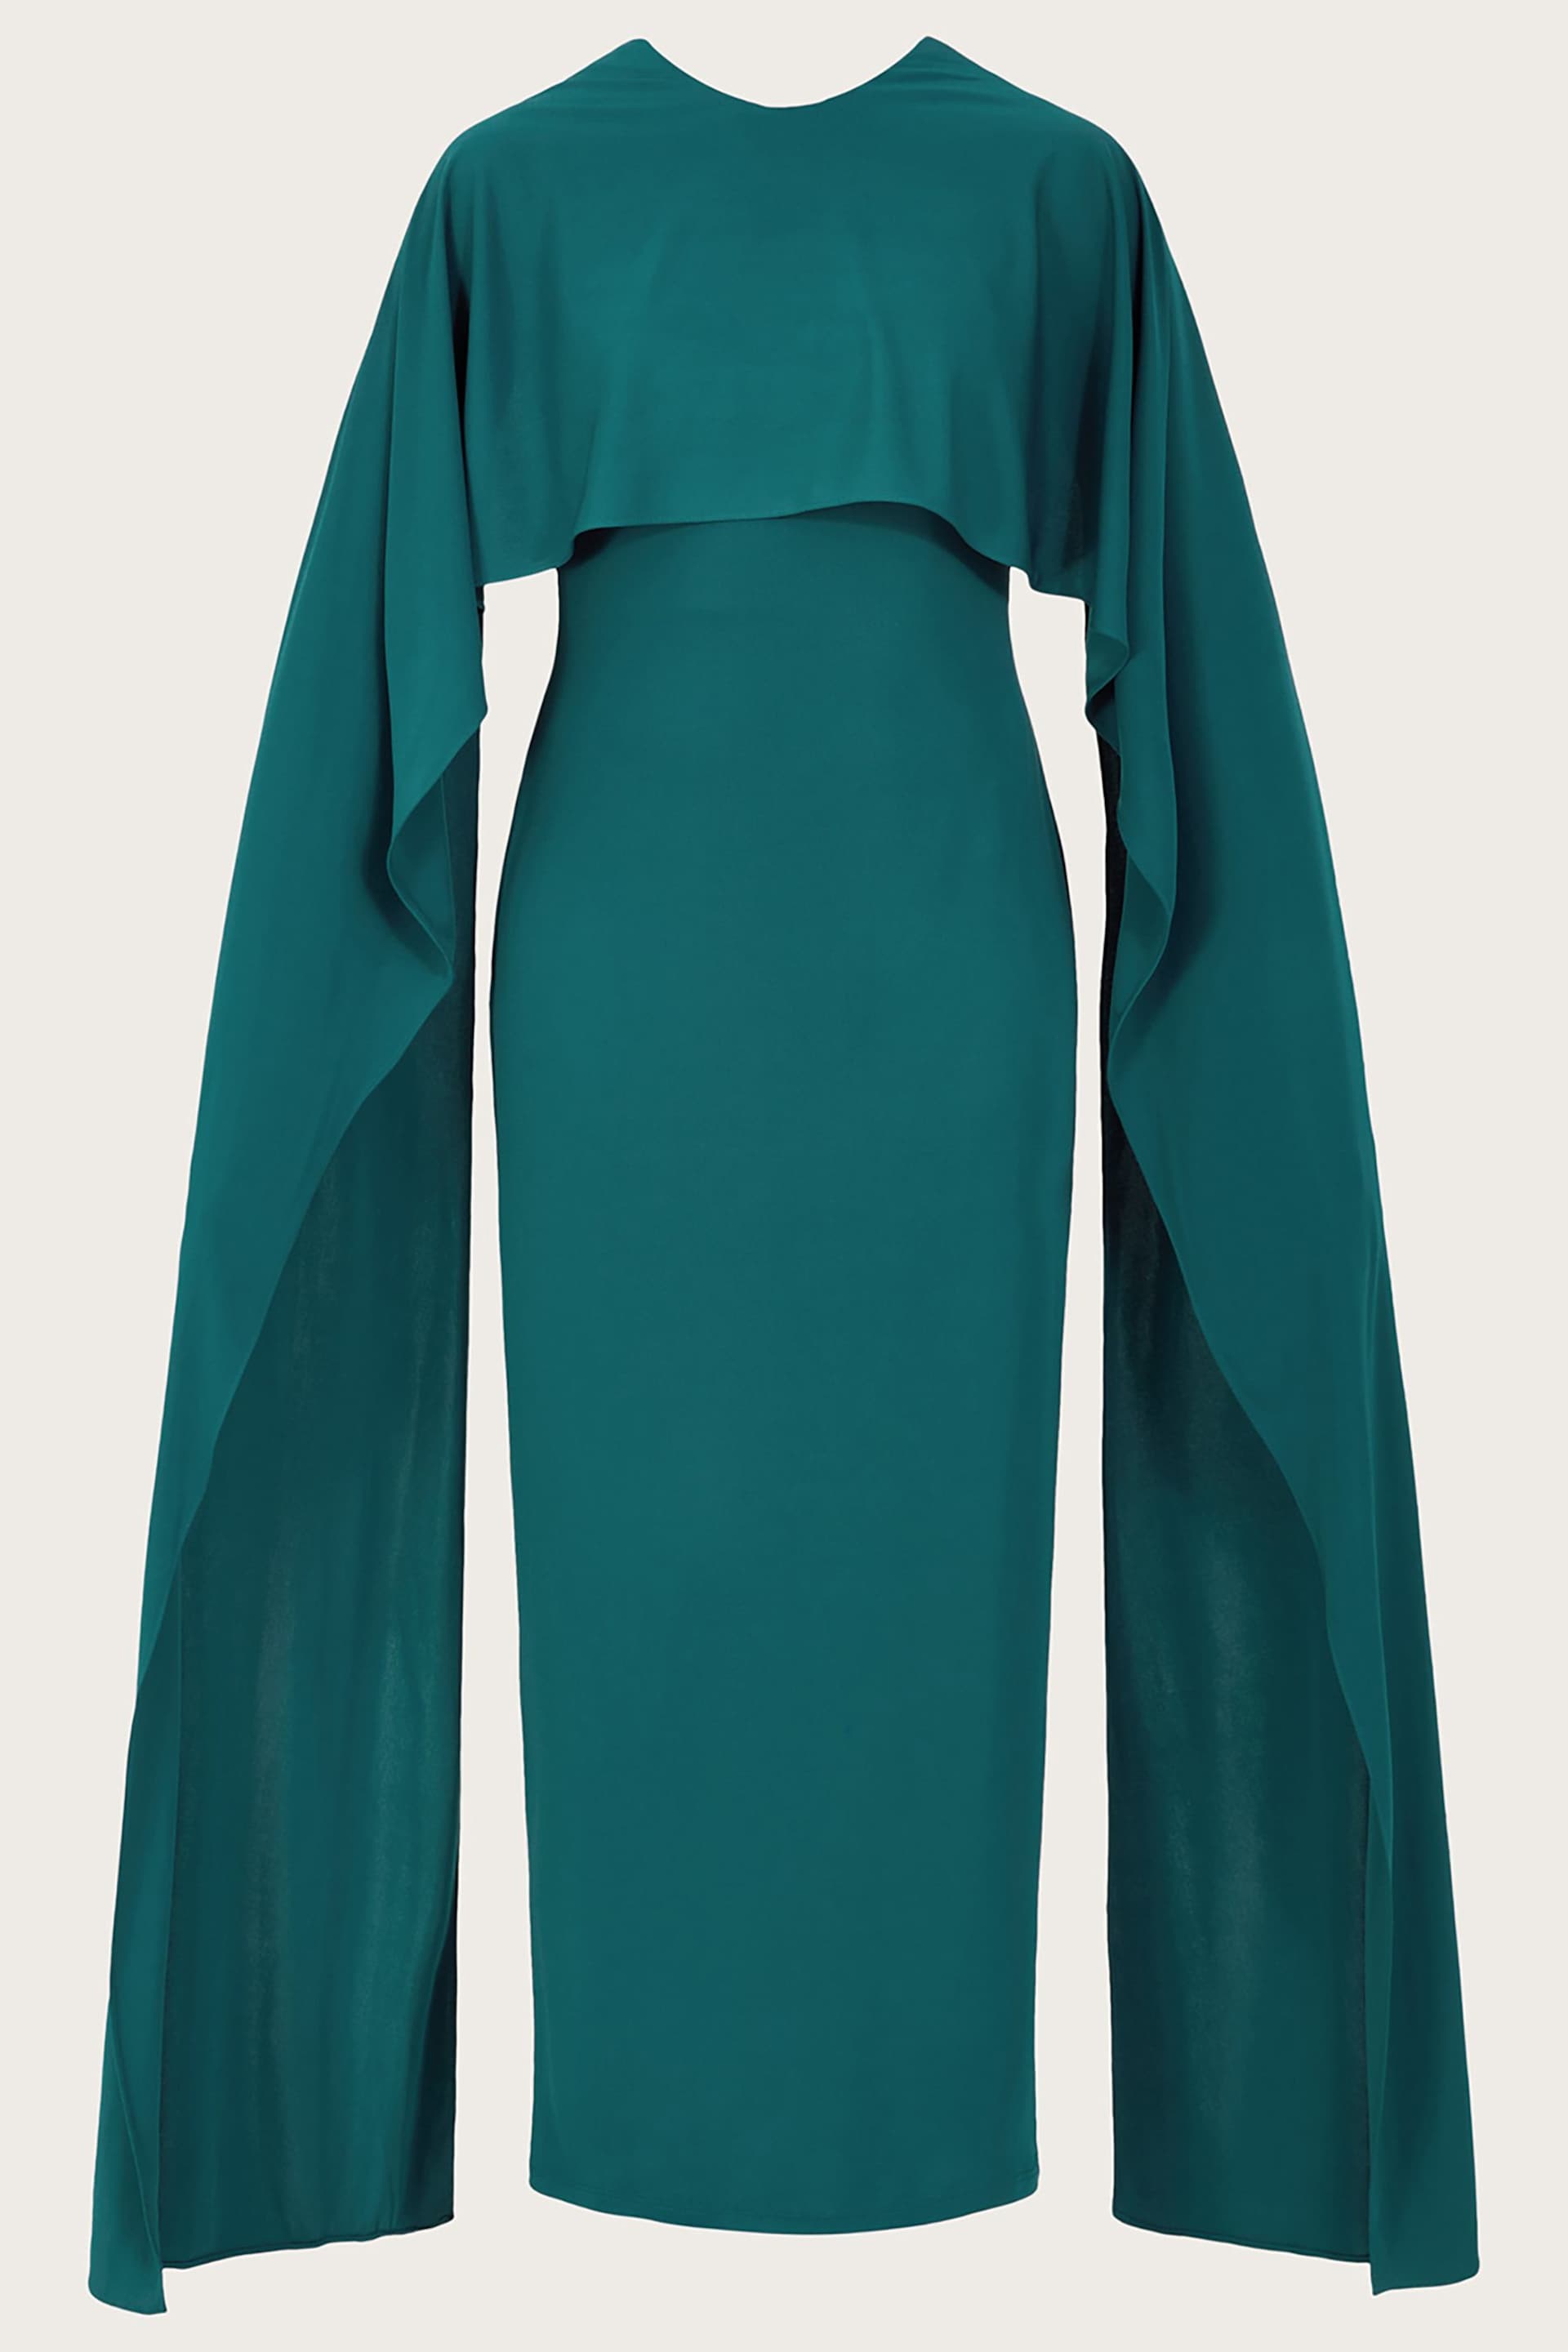 Monsoon Blue Maya Multiwear Dress - Image 5 of 5